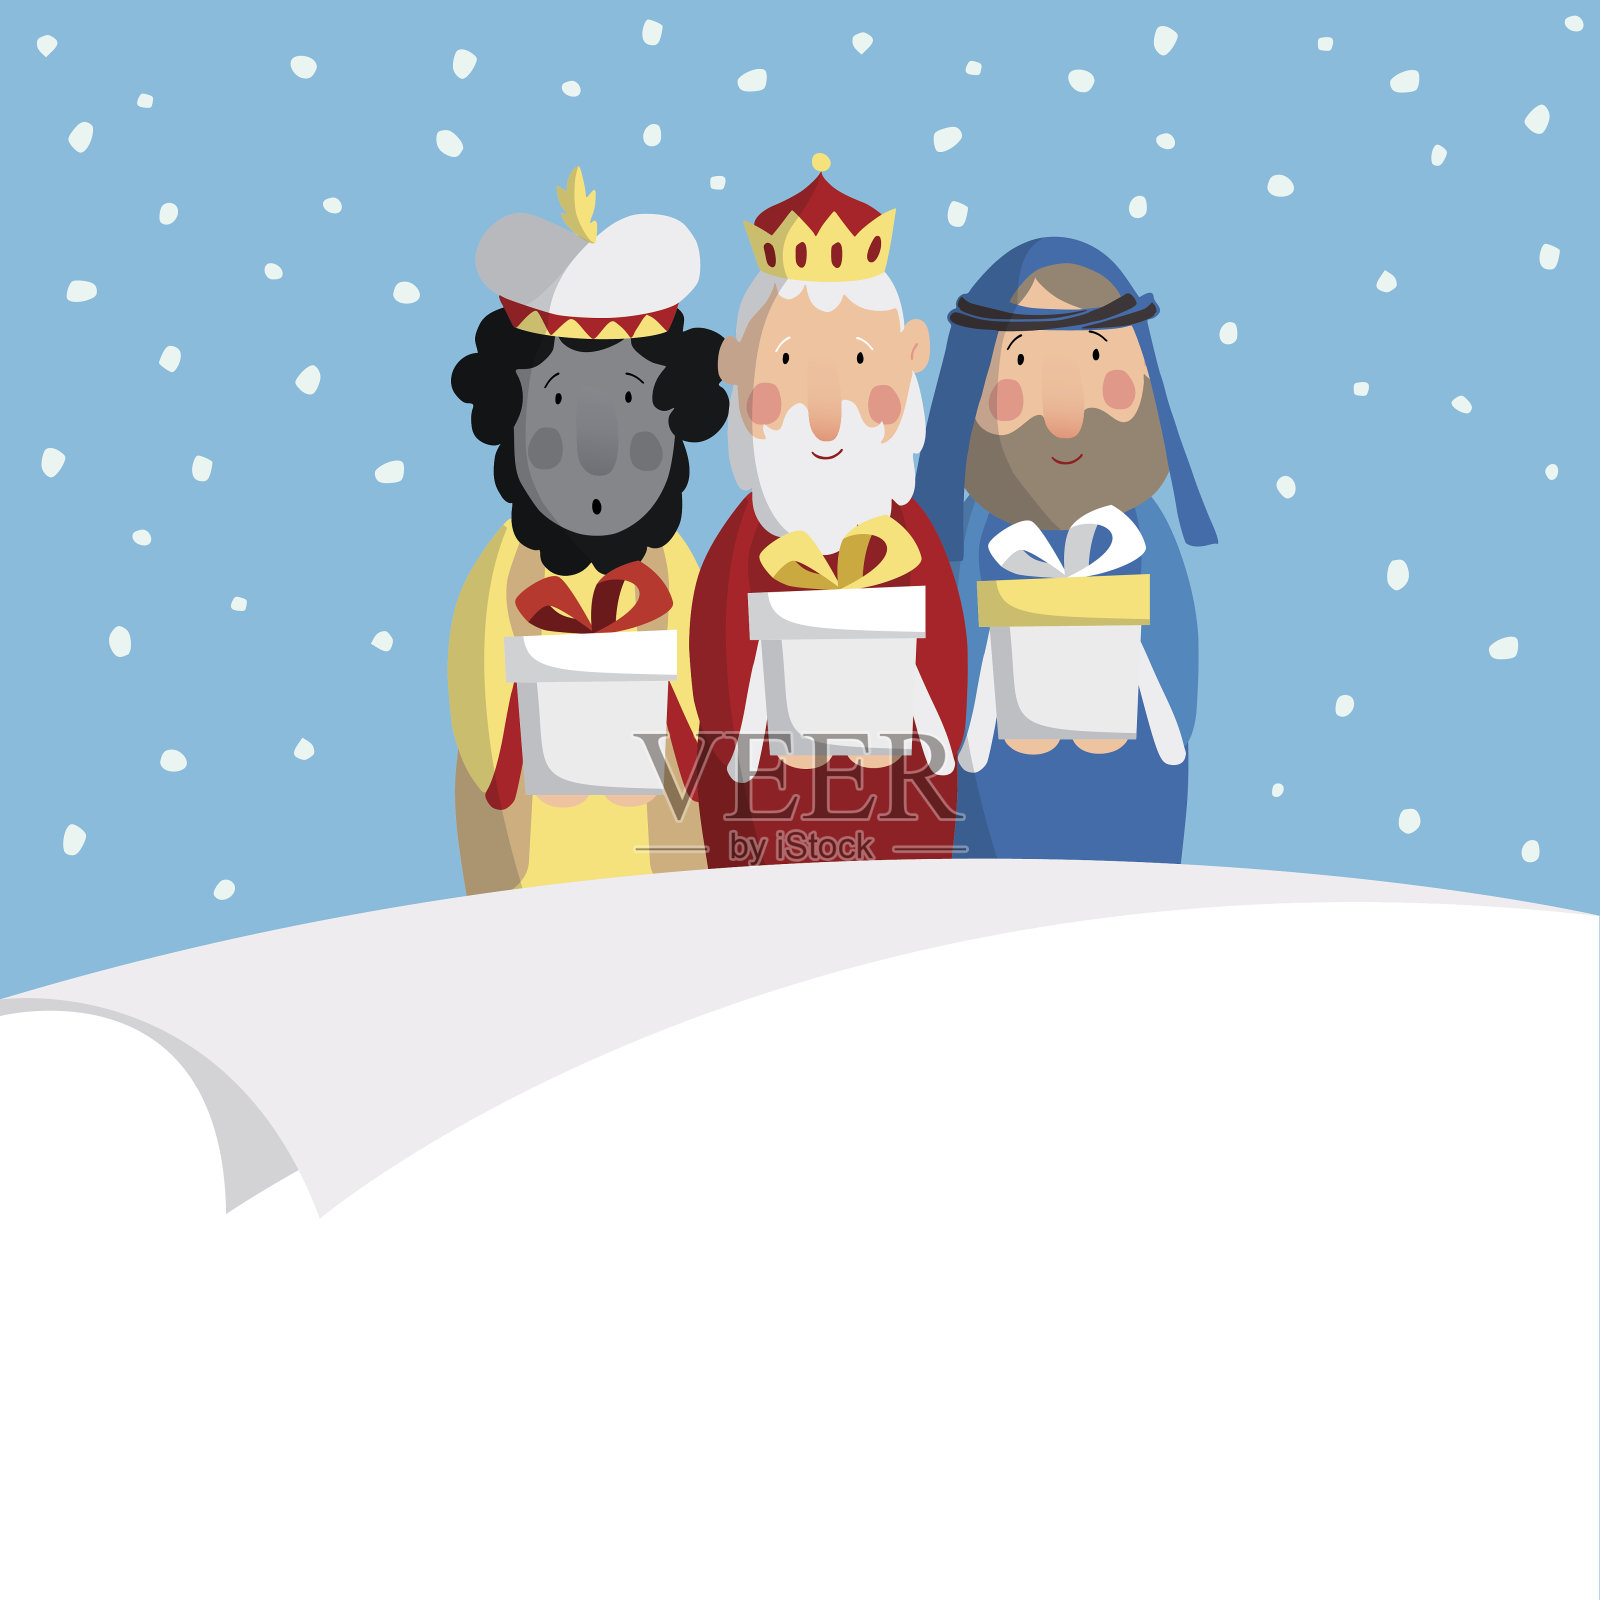 可爱的圣诞贺卡与三个麦琪带来。圣经的国王。插画图片素材